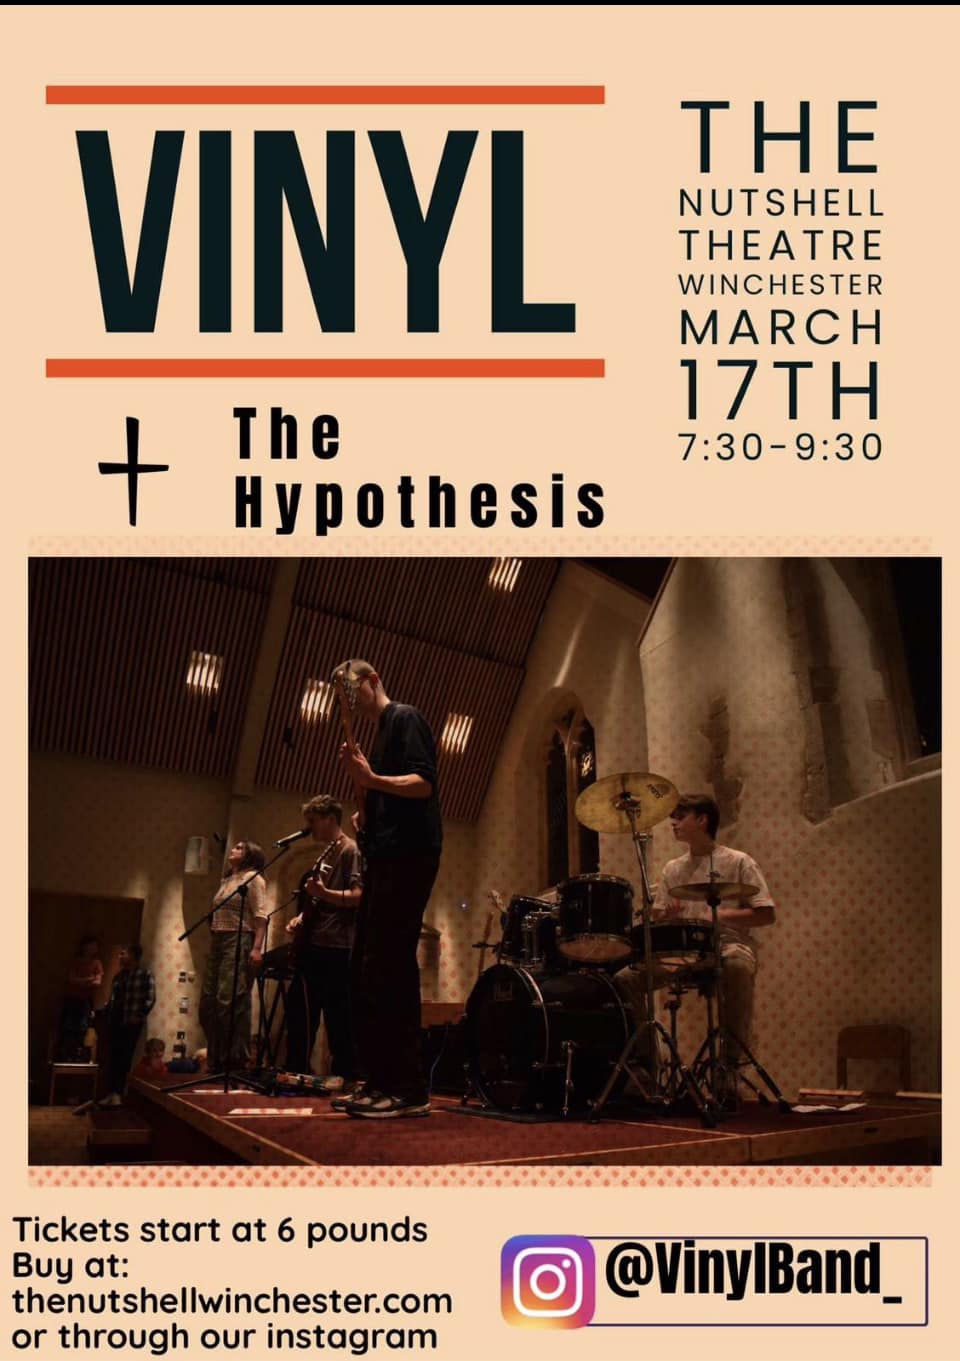 VINYL + The Hypothesis